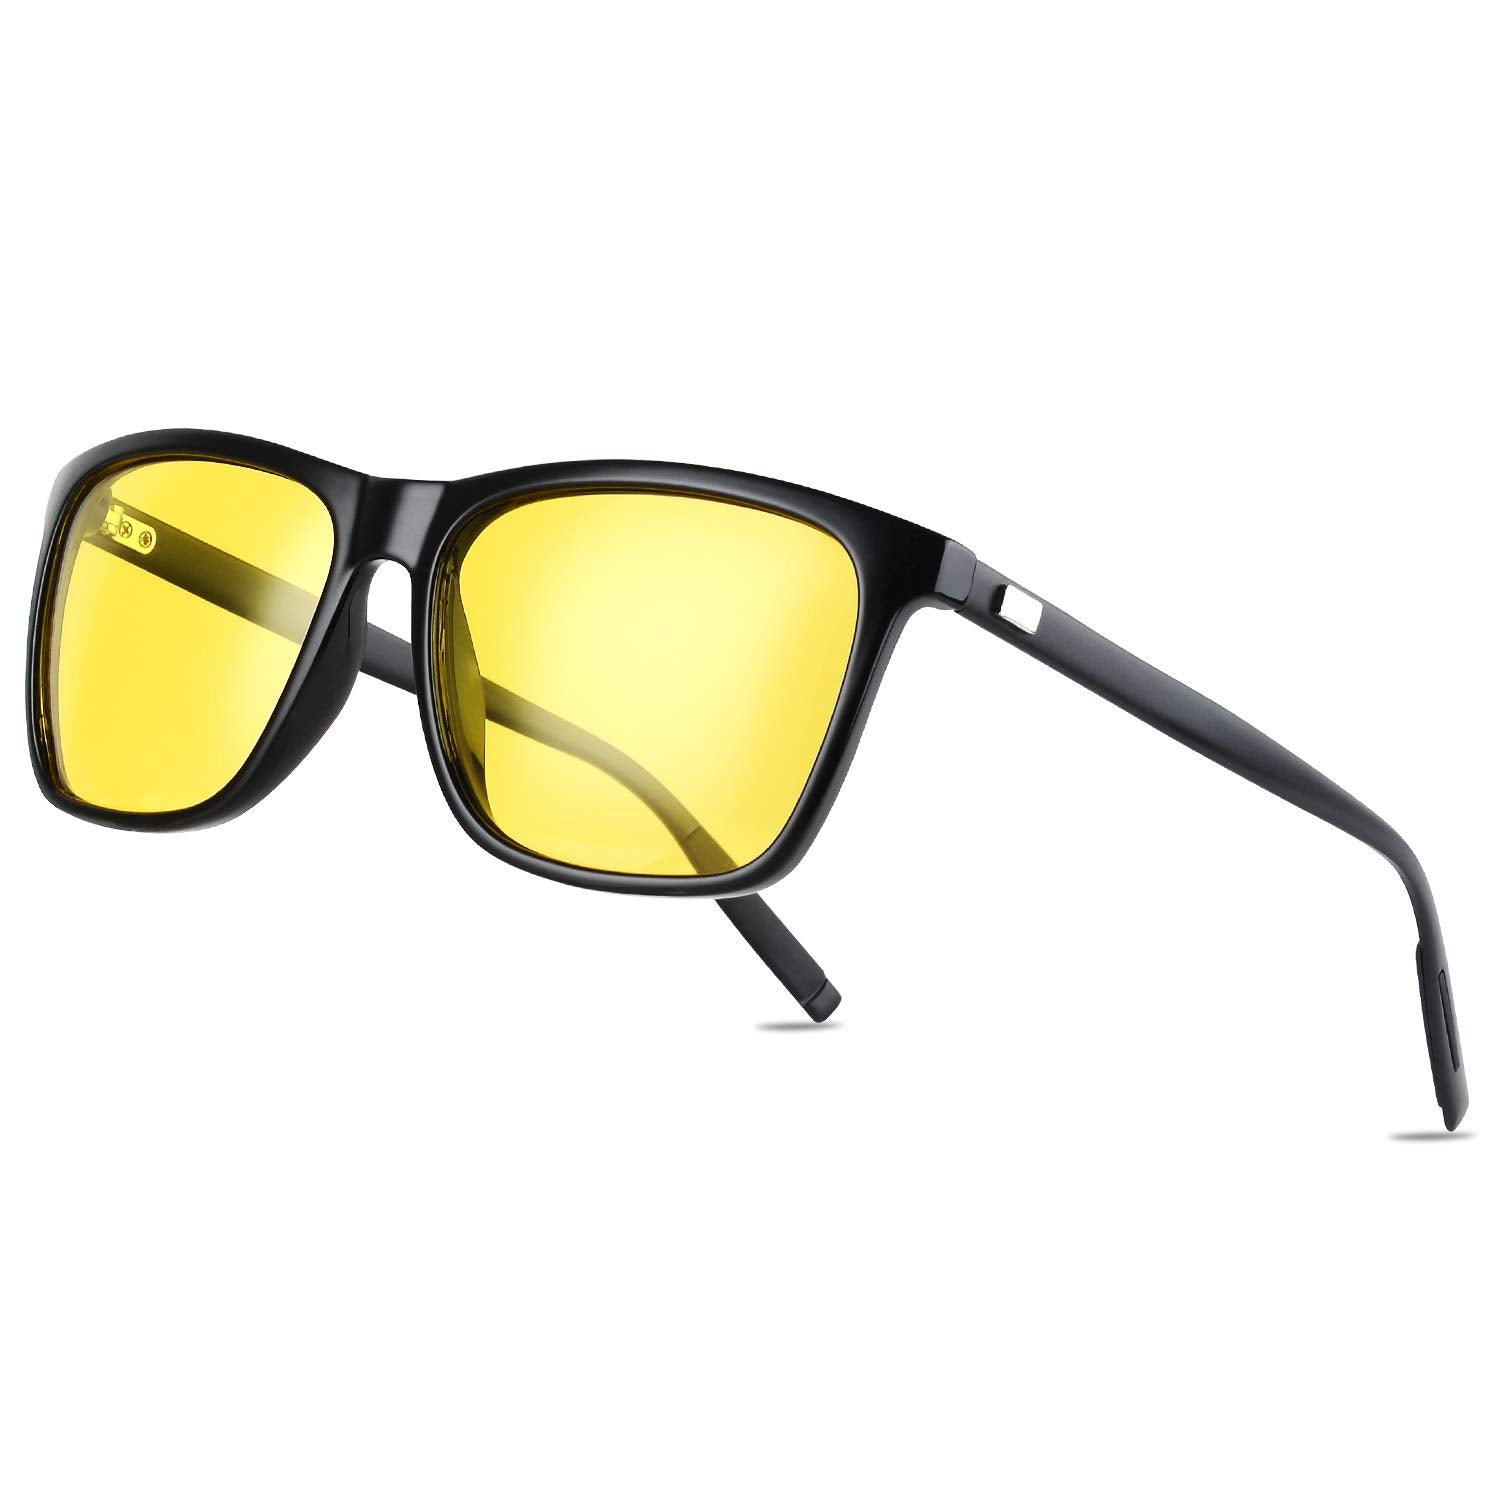 TJUTR Gafas de visión nocturna para mujer, lentes amarillas polarizadas que  reducen el deslumbramiento, seguridad nocturna, protección UV